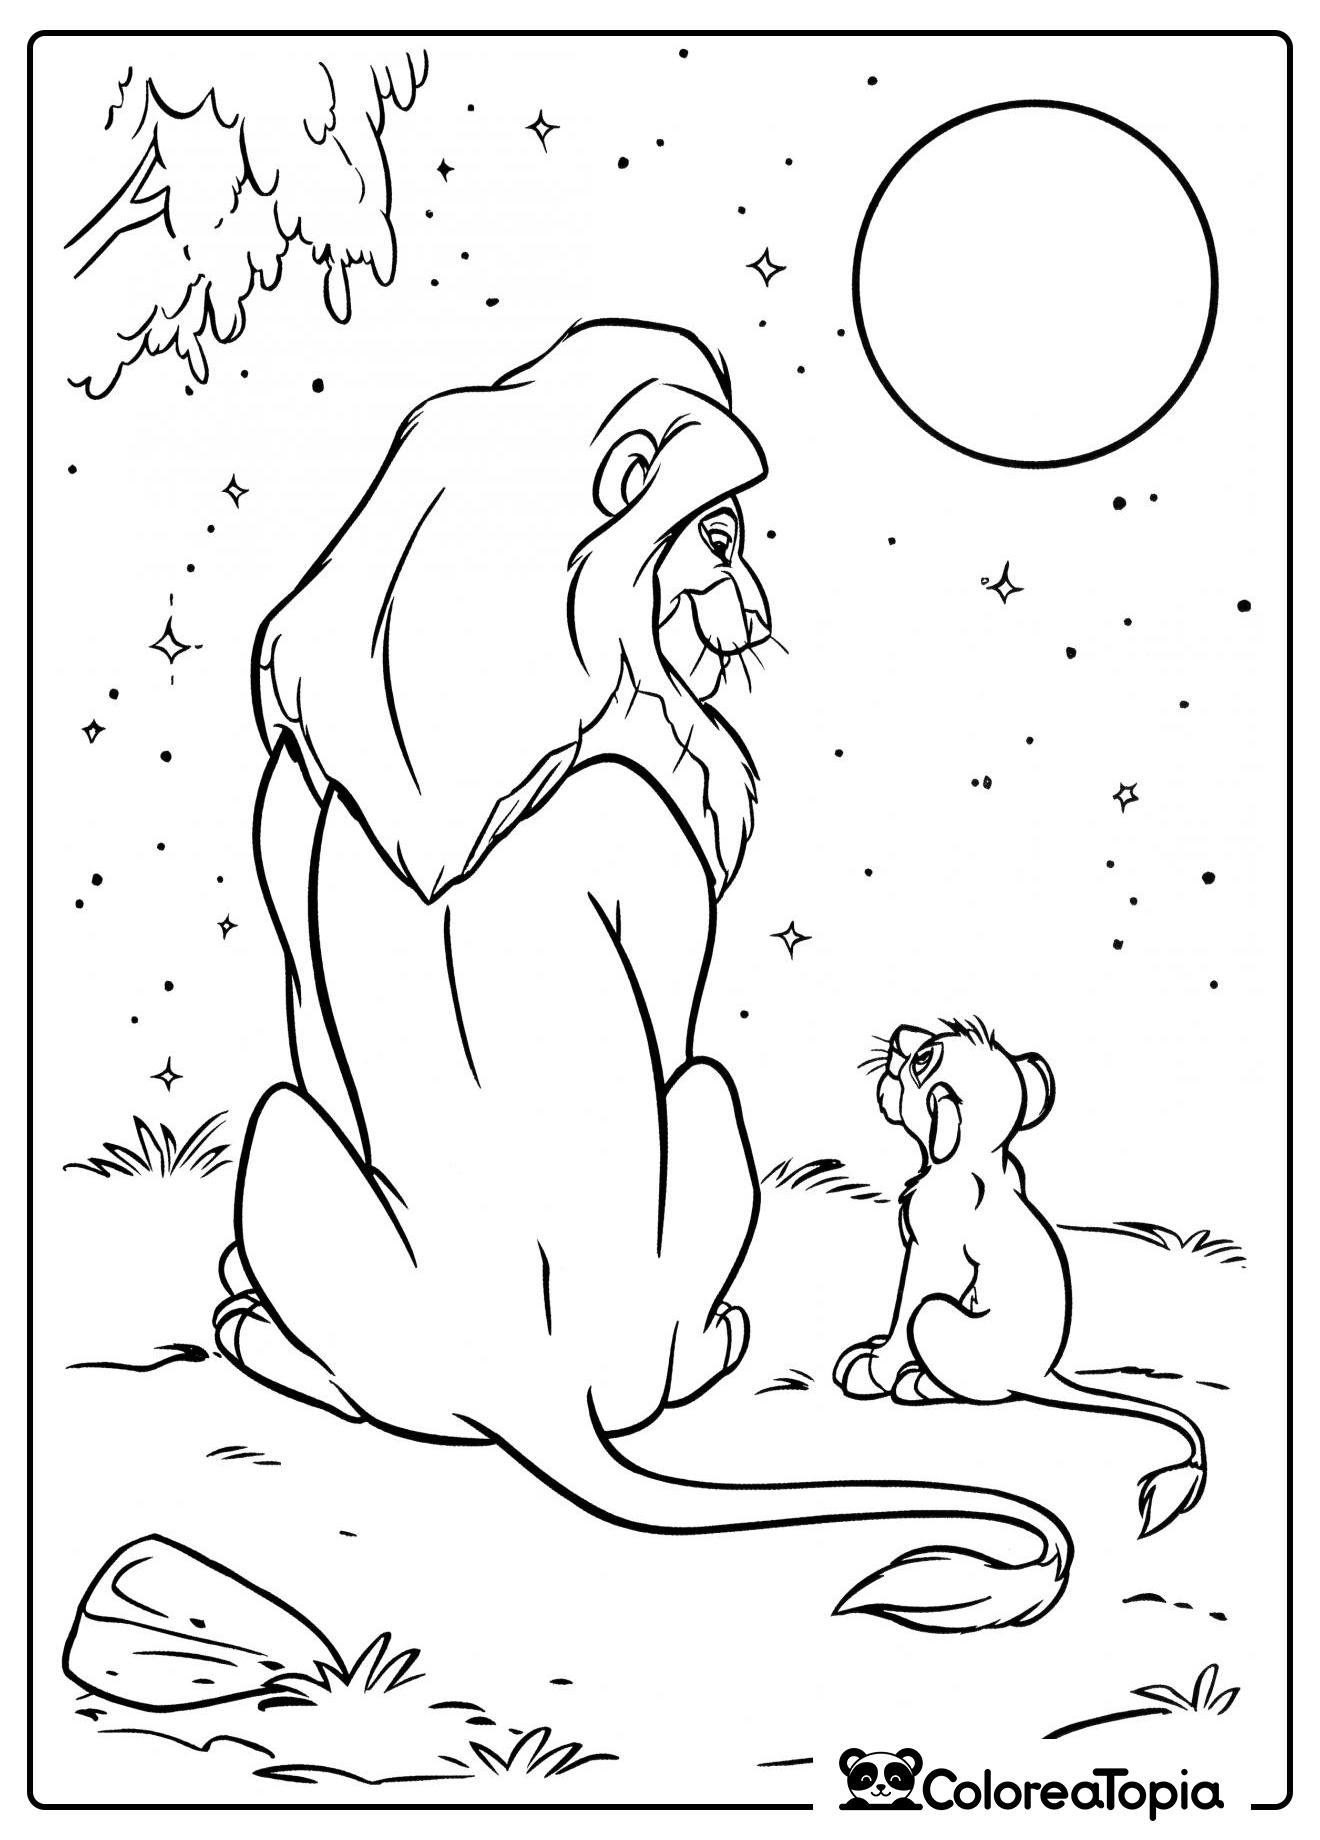 Mufasa y Simba miran las estrellas - dibujo para colorear